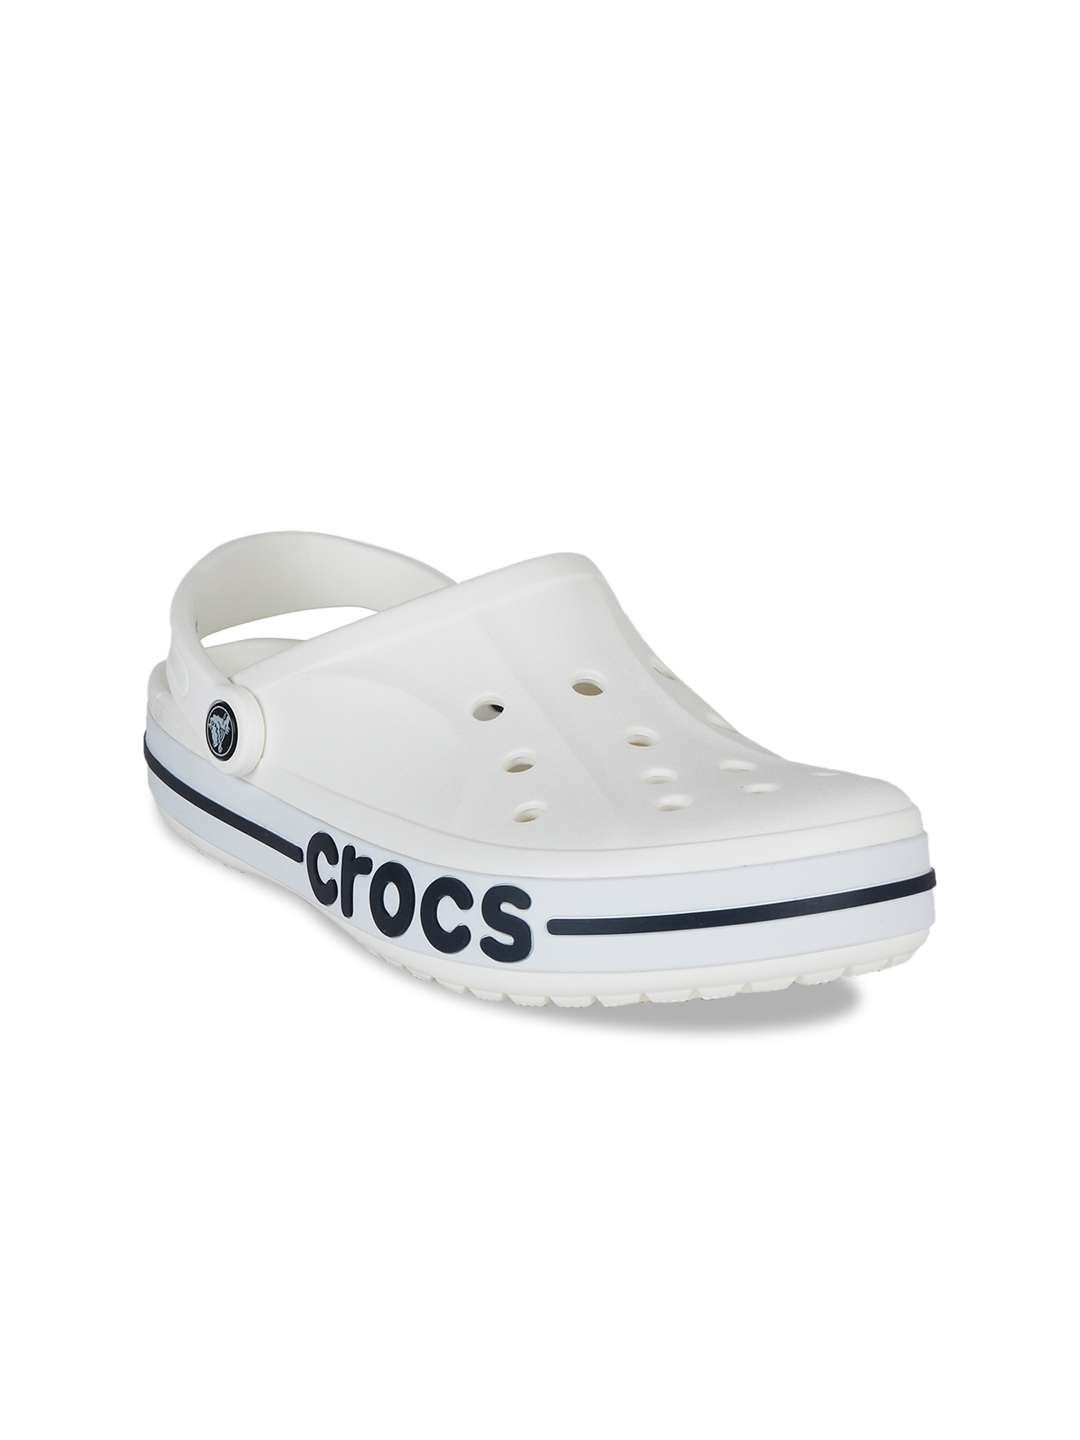 Buy Crocs Men White Sandals - Sandals 